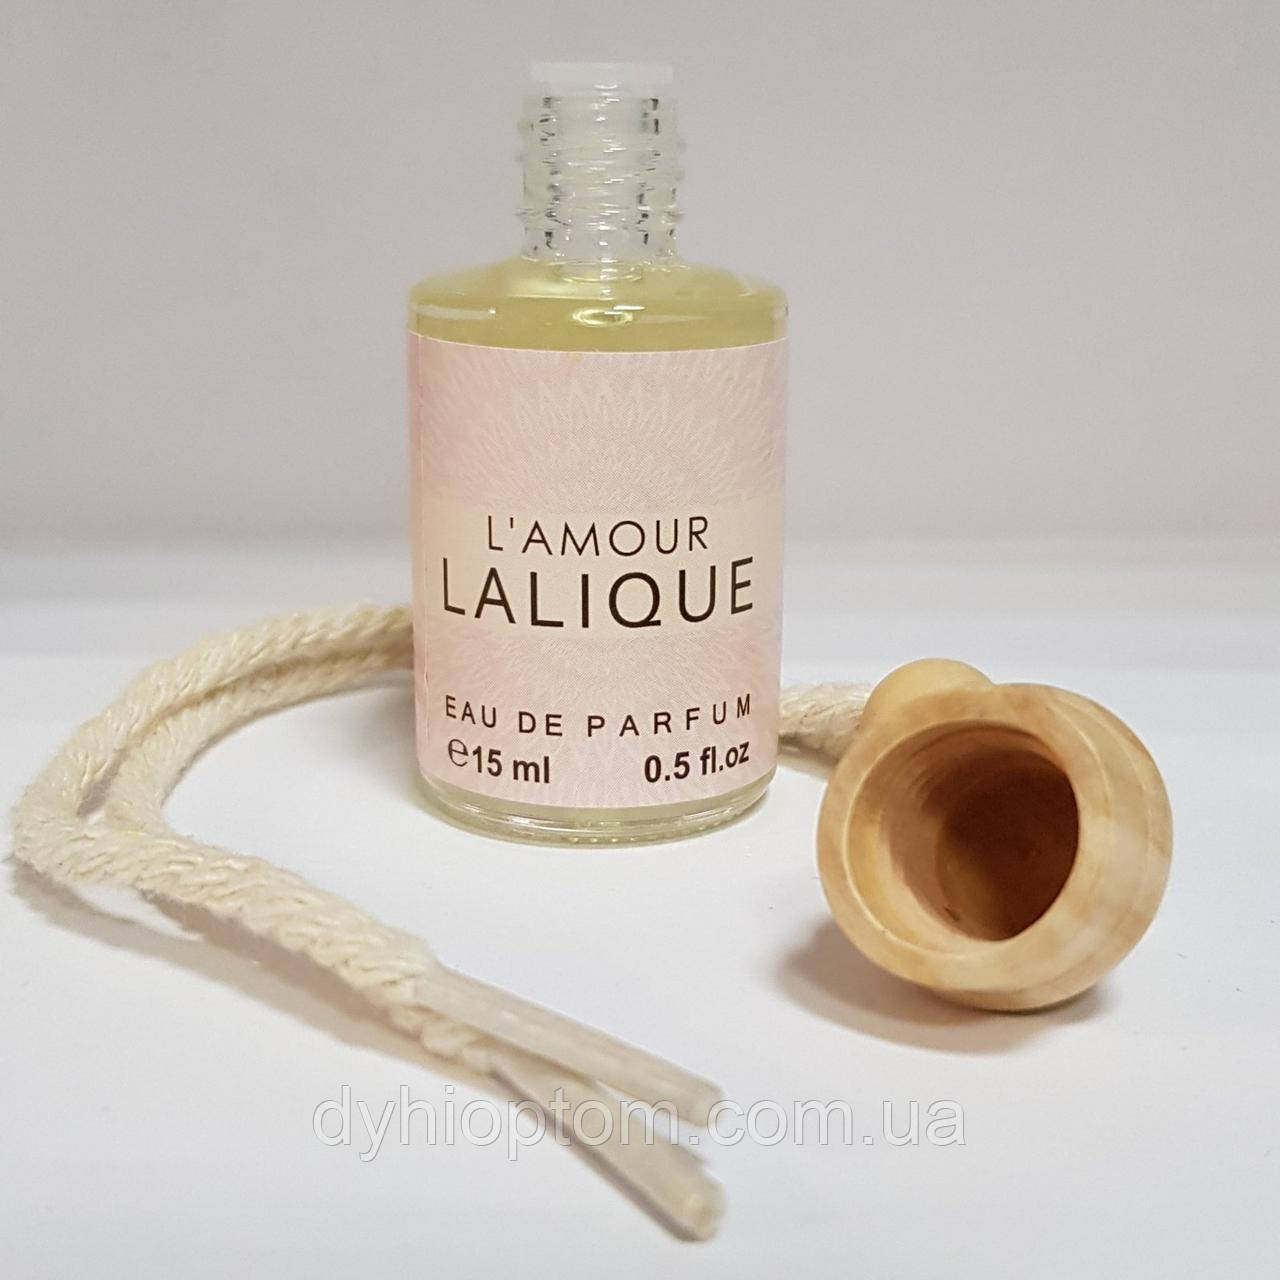 Автопарфюм 15мл Lalique l'amour